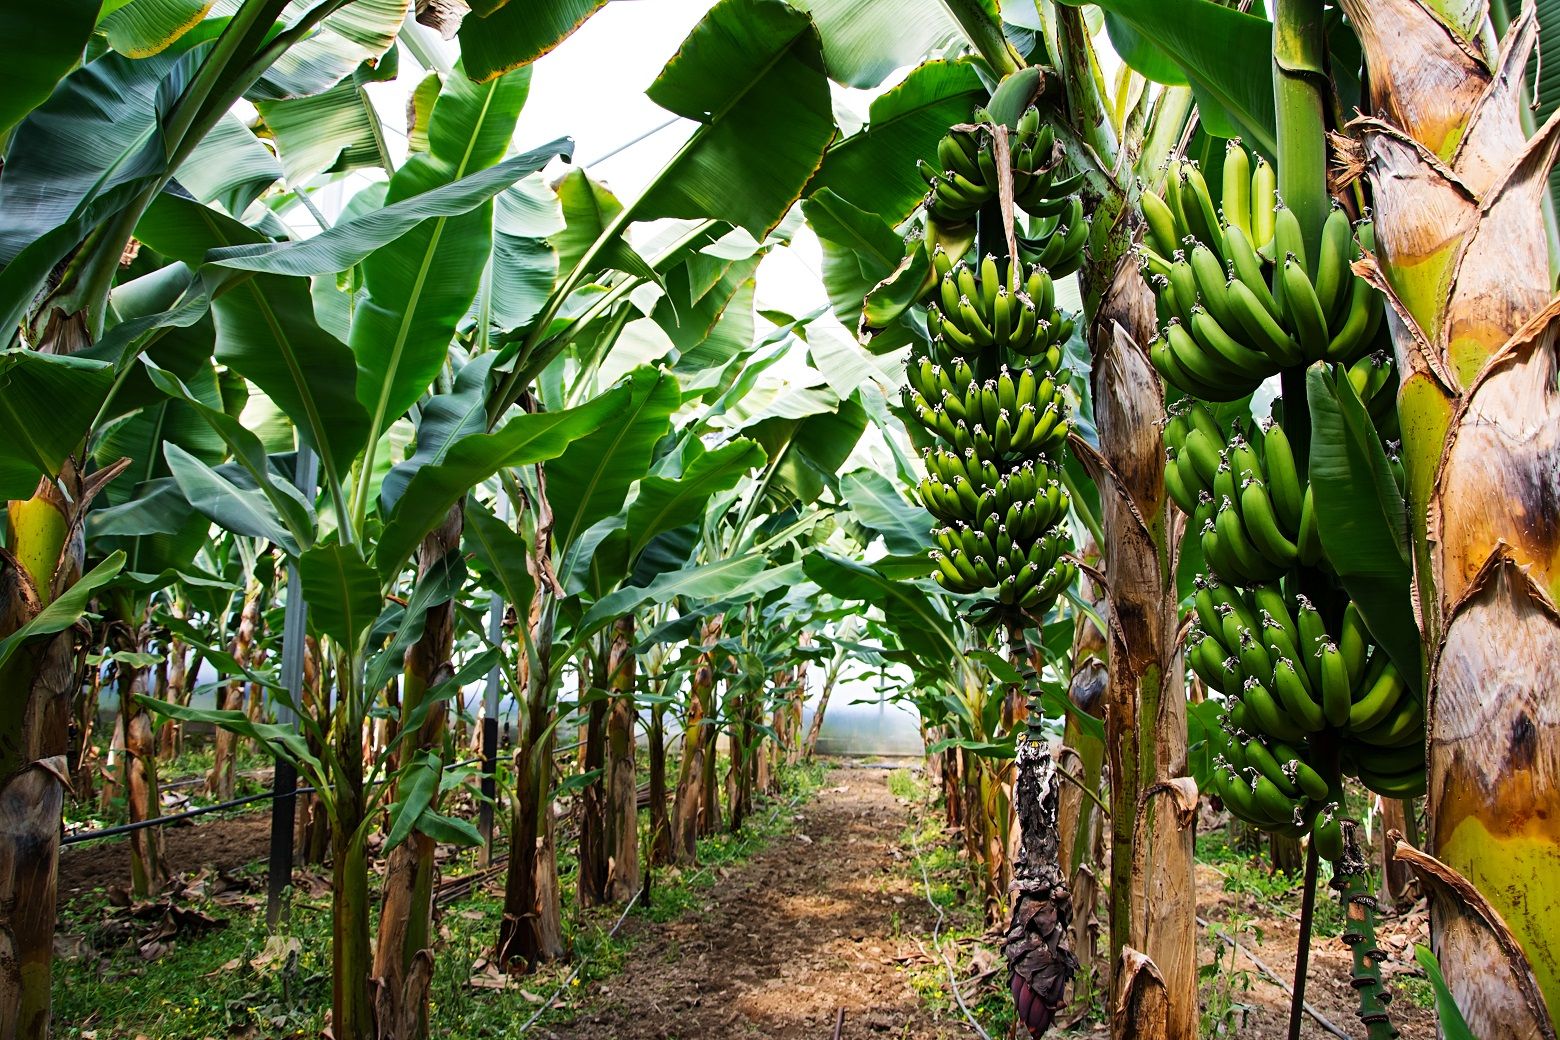 Pohon pisang adalah tumbuhan yang berkembang biak dengan